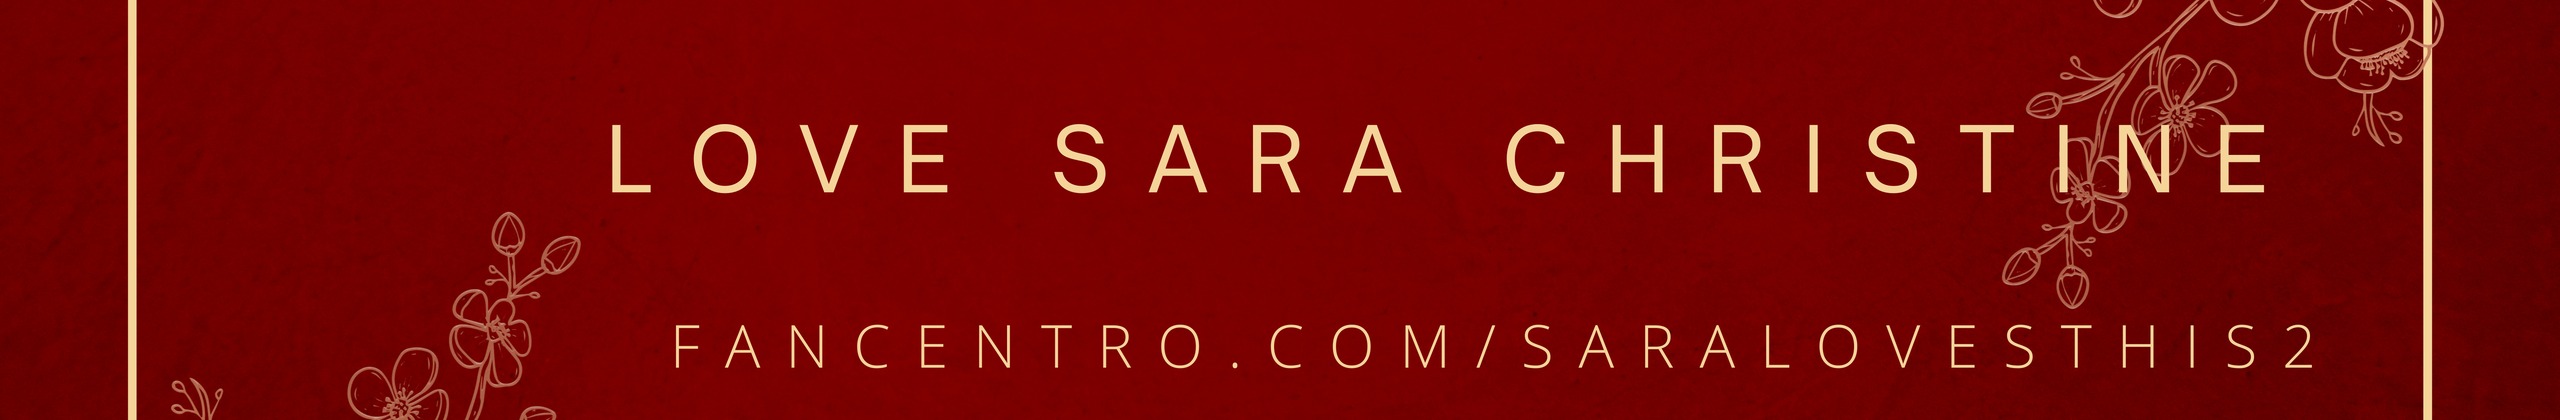 Love Sara Christine - profile image